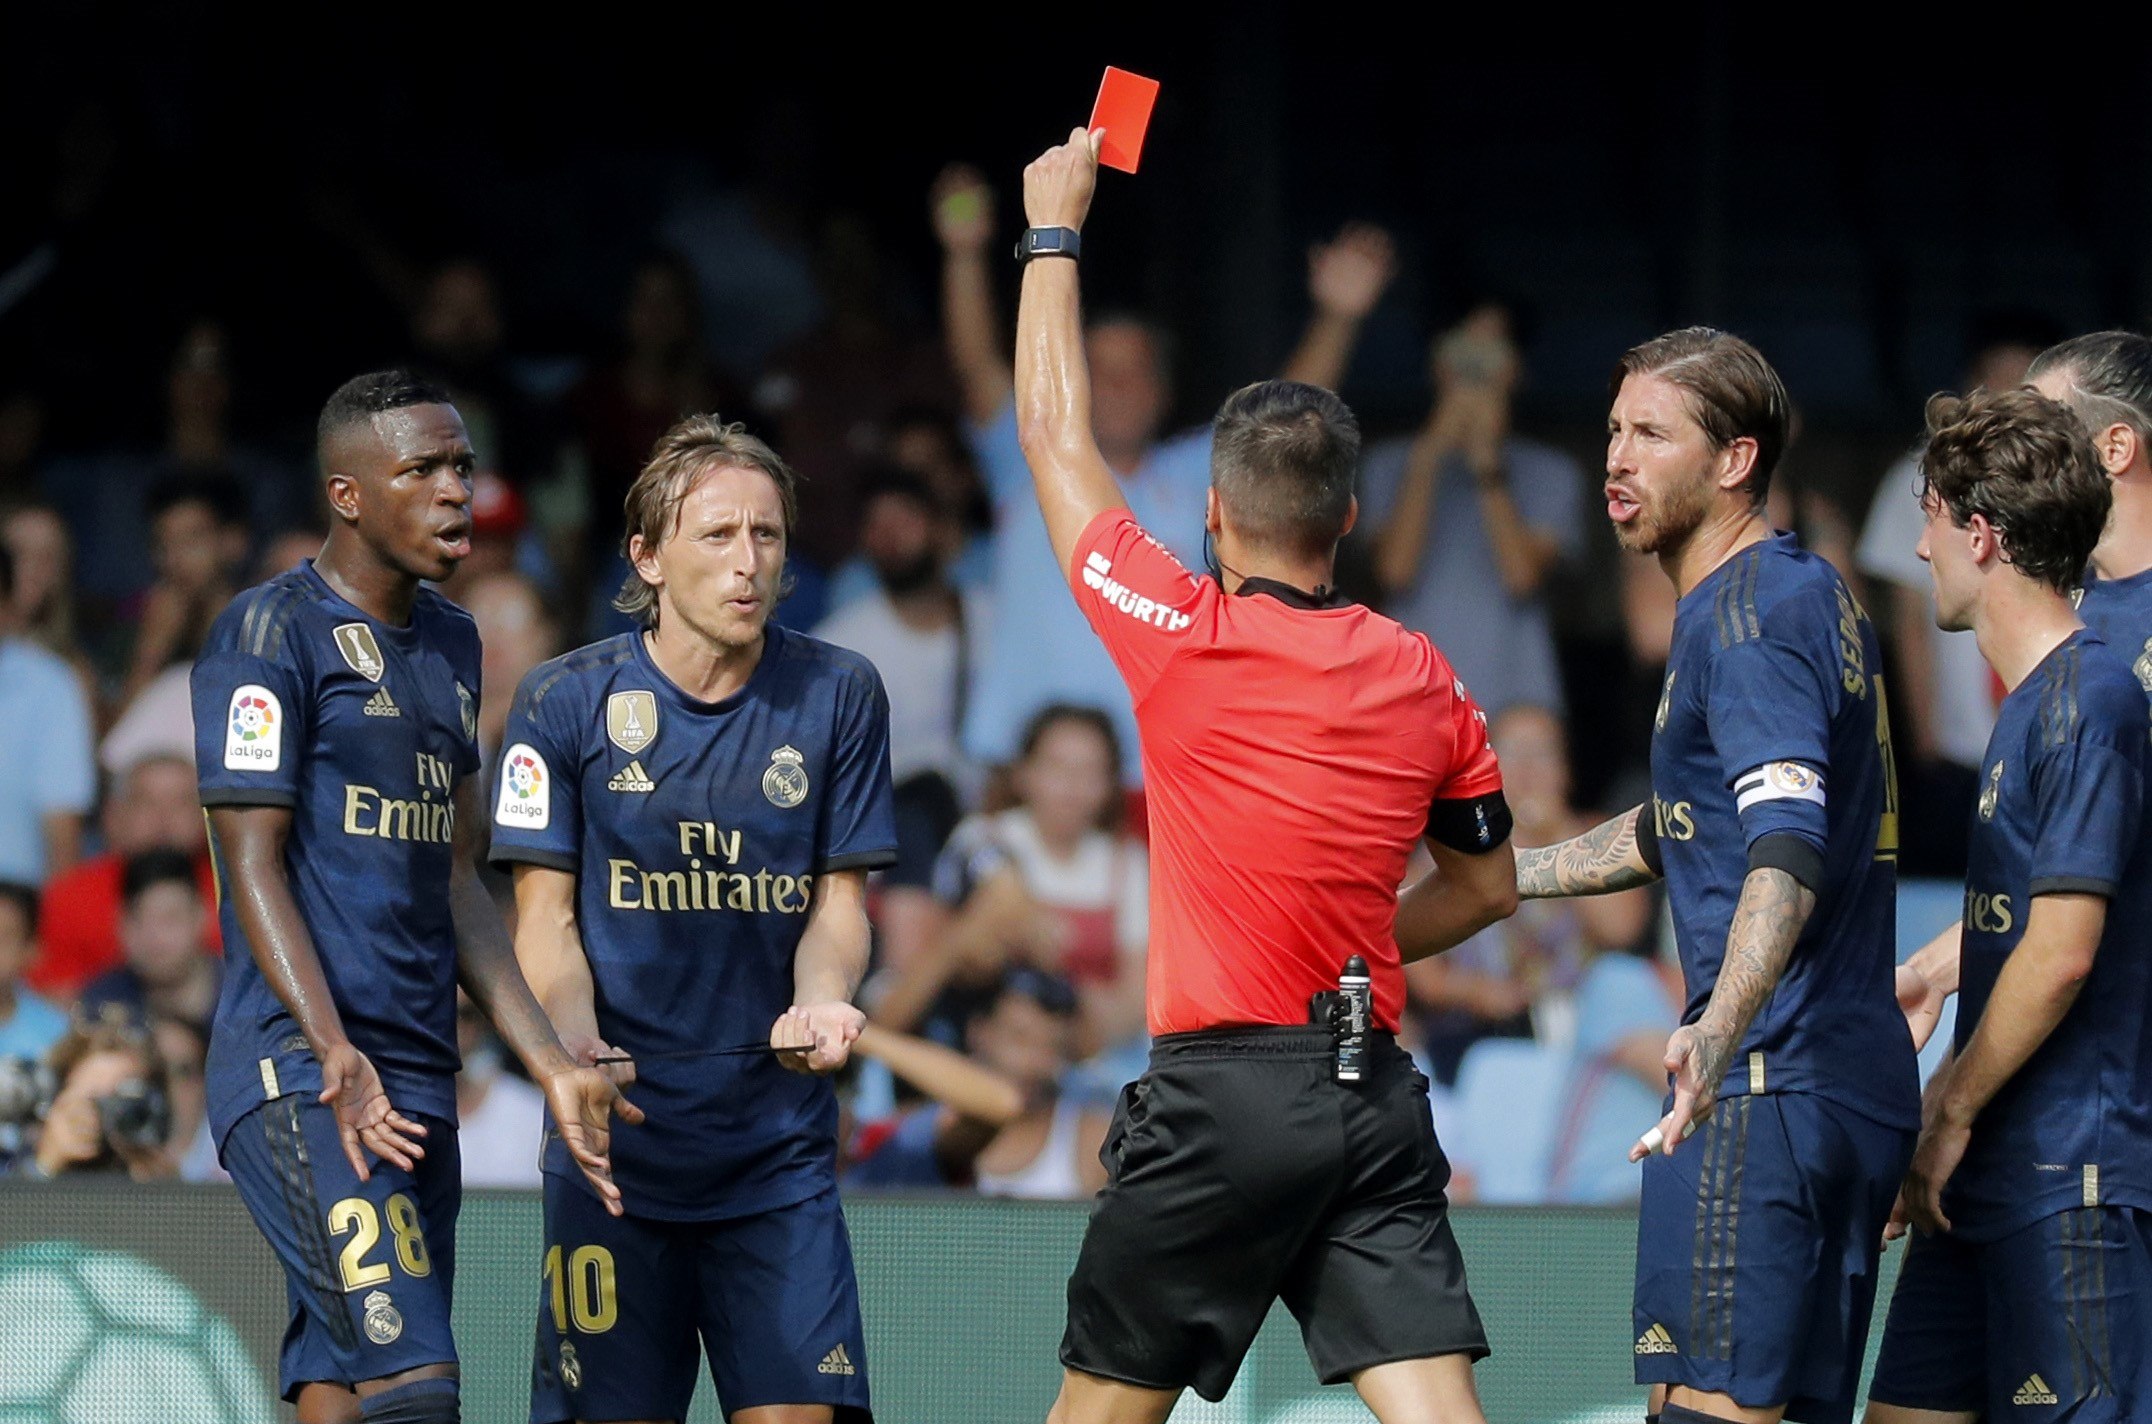 El árbitro central Javier Estrada muestra la tarjeta roja al jugador croata del Real Madrid Luka Modric por una falta al jugador del Celta de Vigo Denis Suárez. (Foto Prensa Libre: EFE)